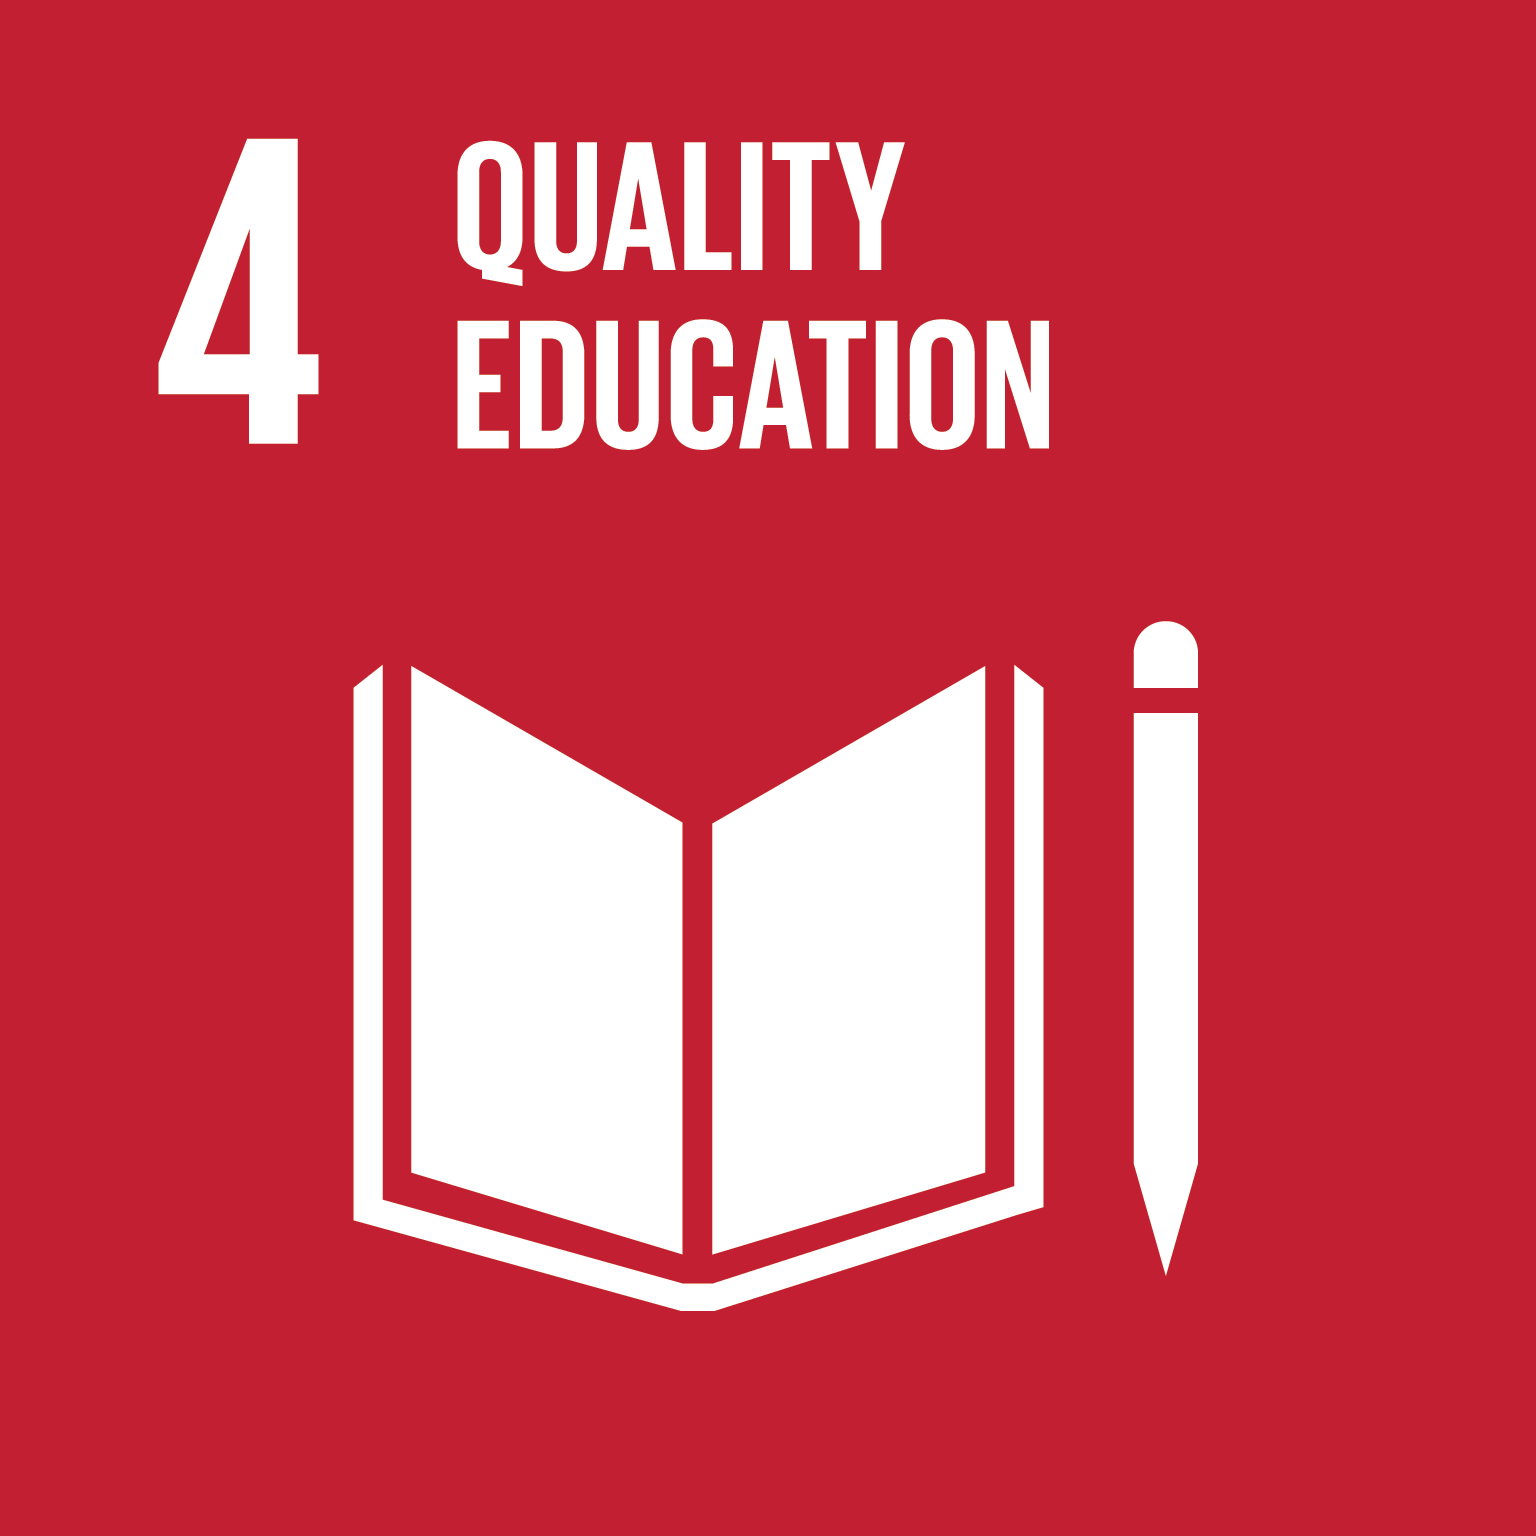 Icona degli Obiettivi di Sviluppo Sostenibile, Obiettivo 4 "Istruzione di qualità"